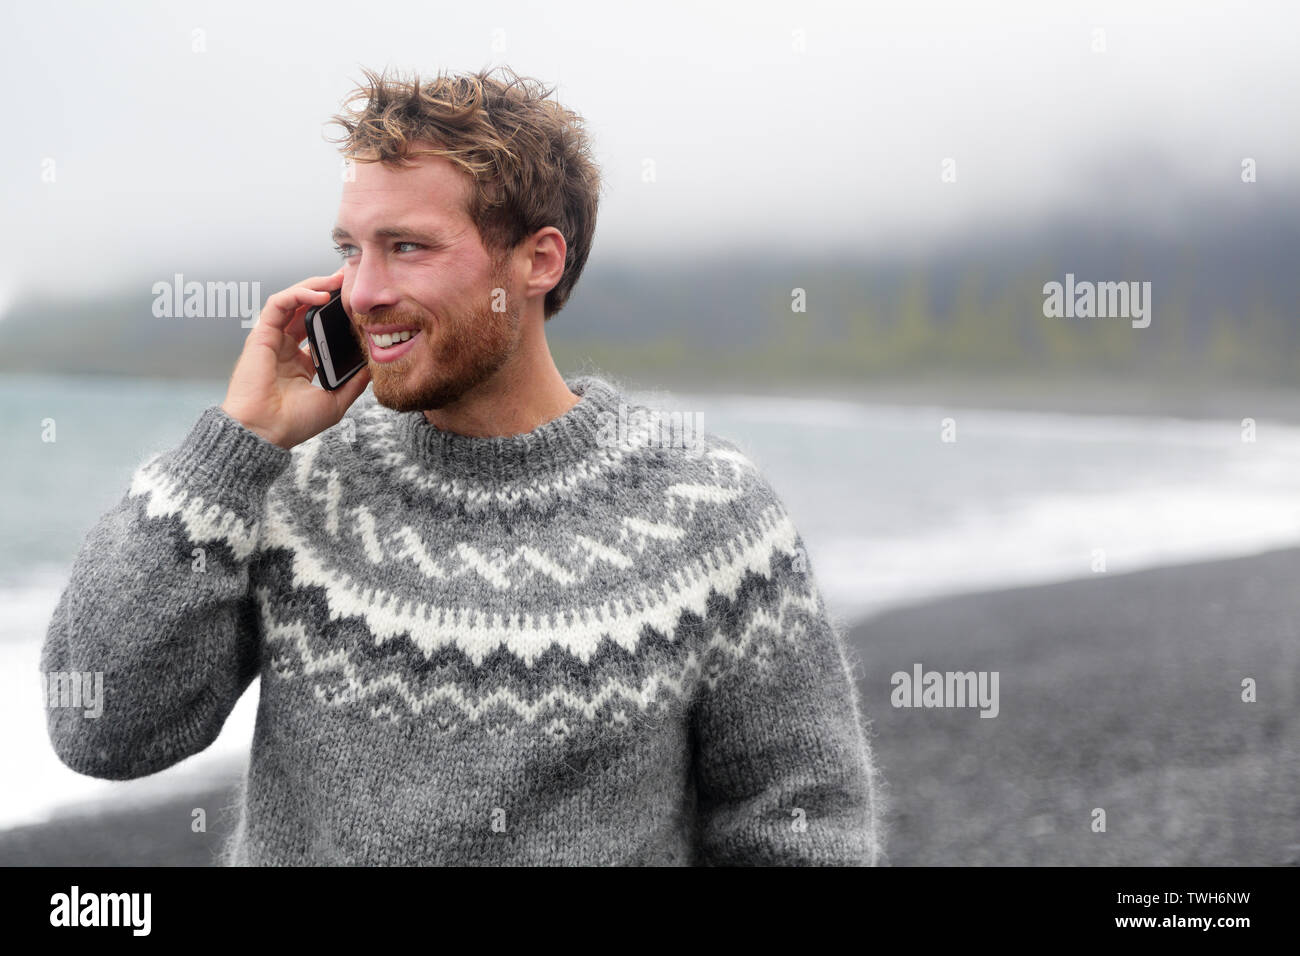 Maglione islandese immagini e fotografie stock ad alta risoluzione - Alamy